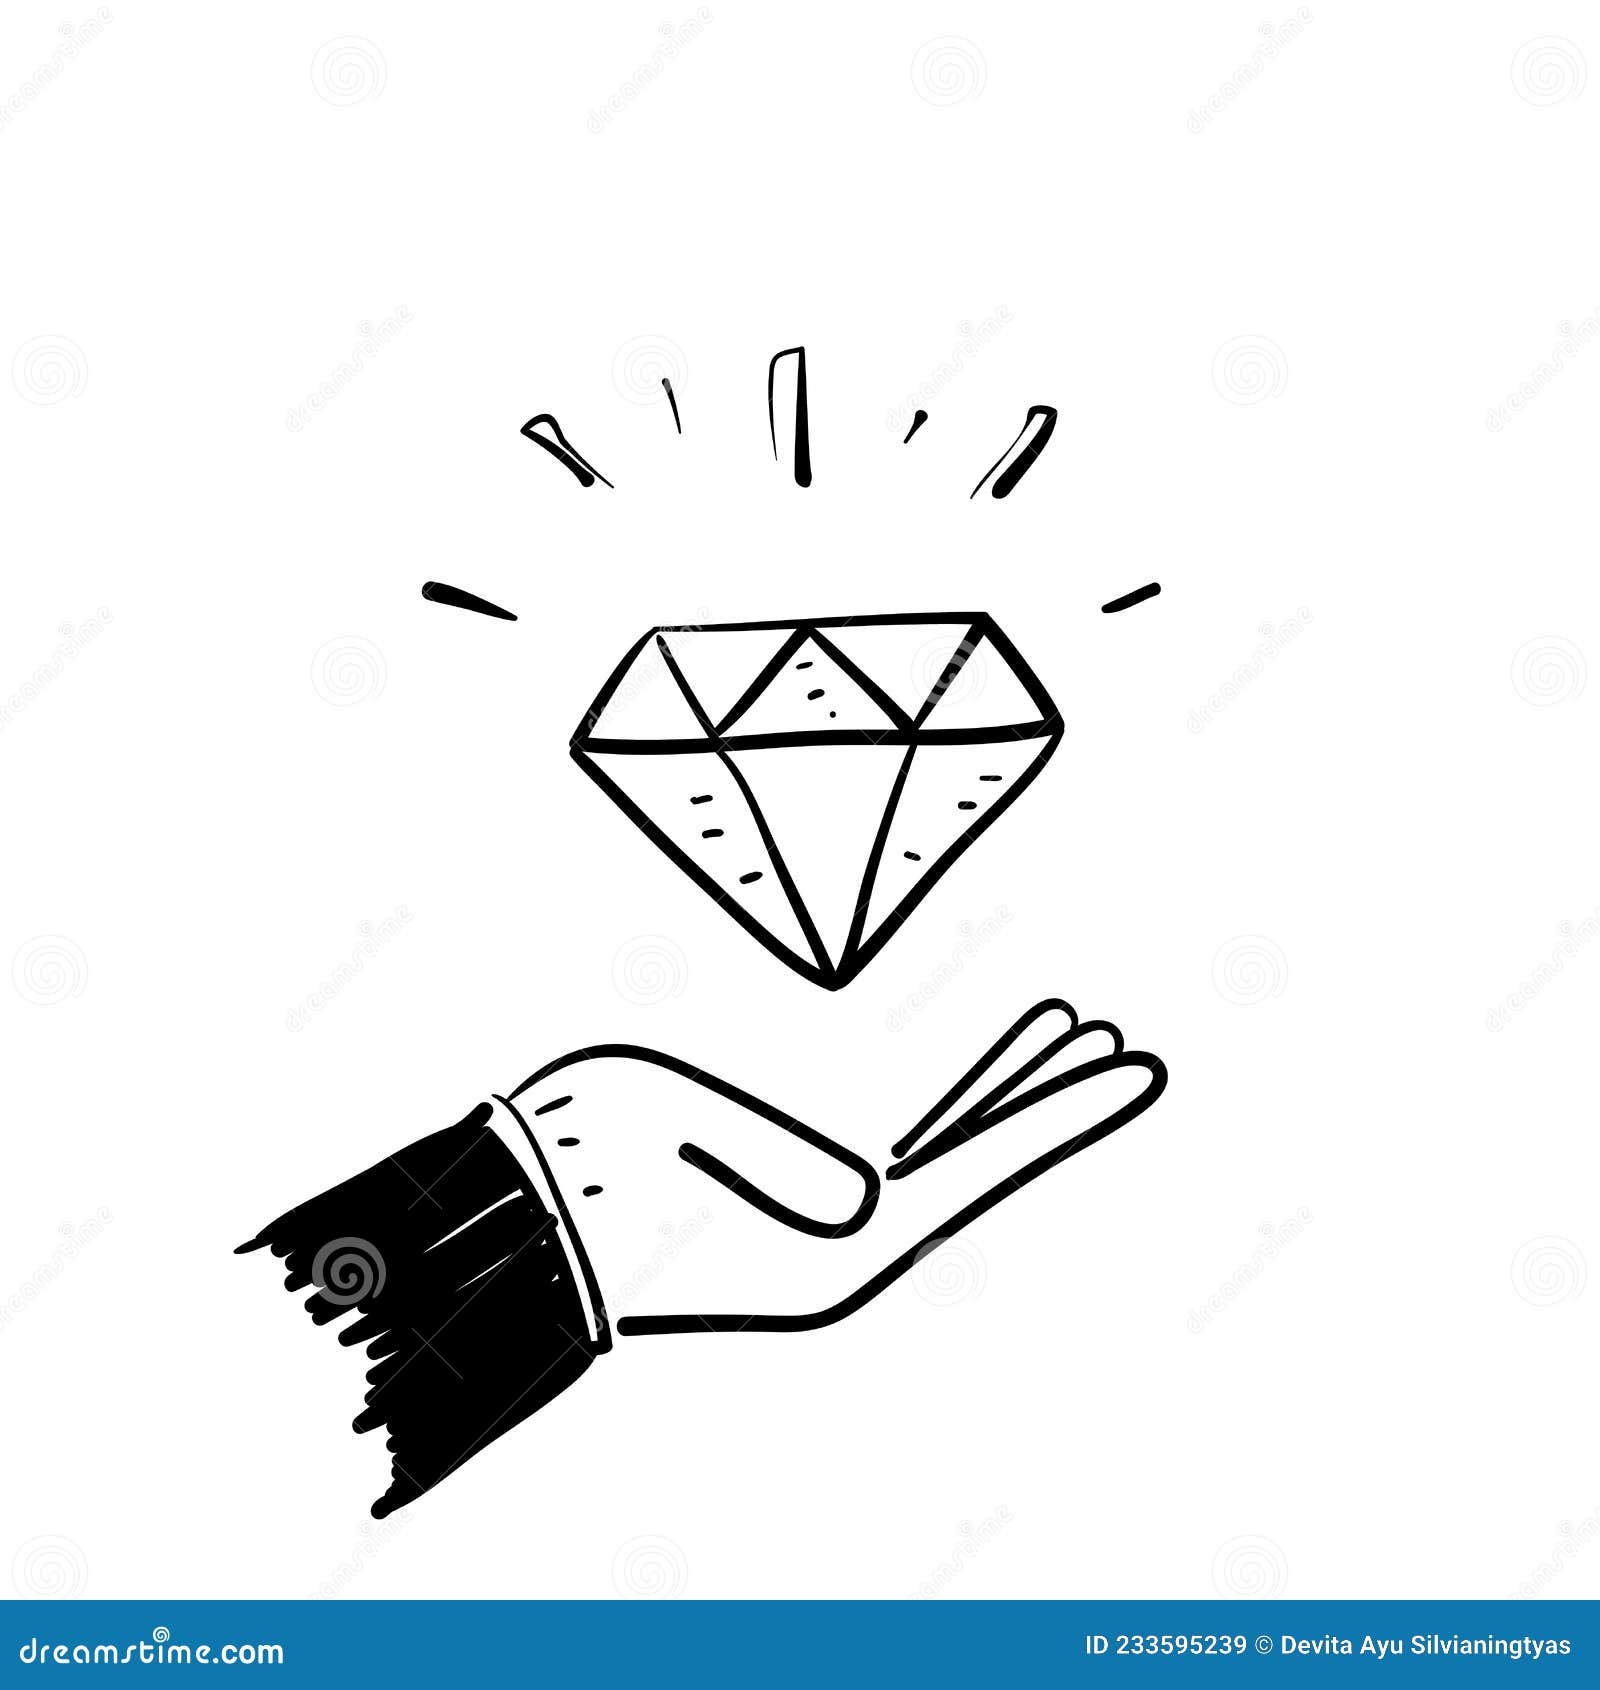 Doodle mano dibujar conjunto de diamantes, ilustración vectorial